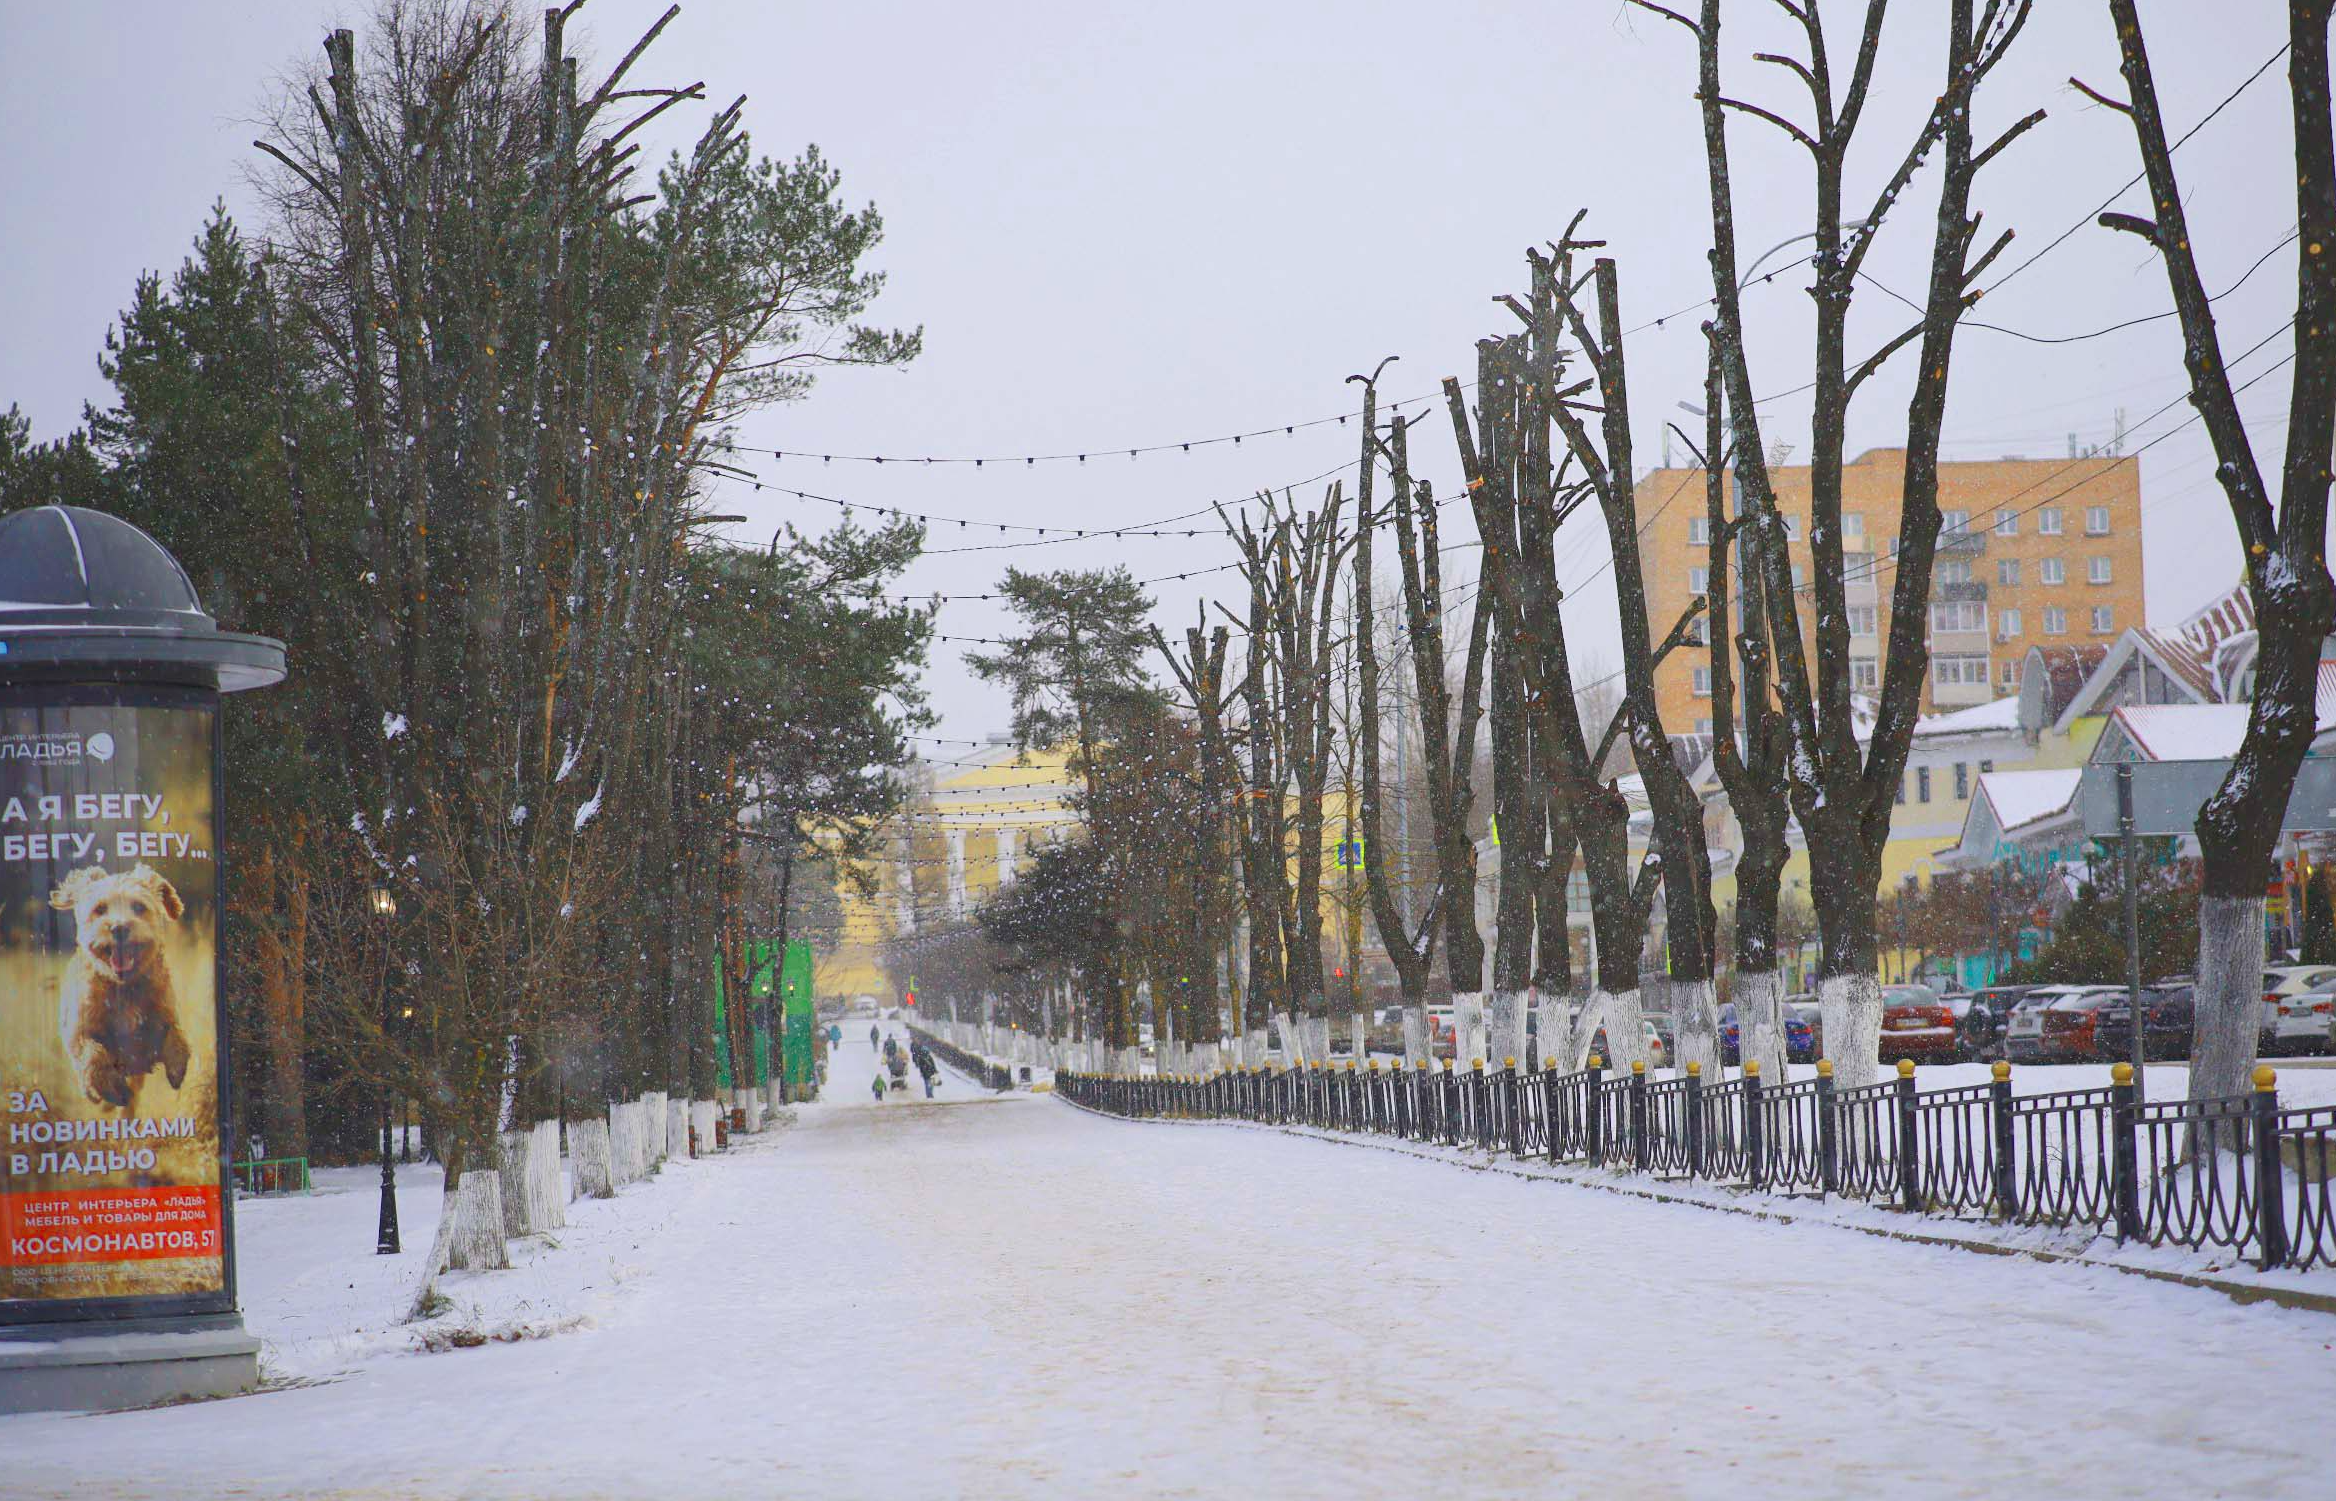 Непогода приближается: холодная атлантическая «Ольга» наметет сугробы в Дмитровском округе